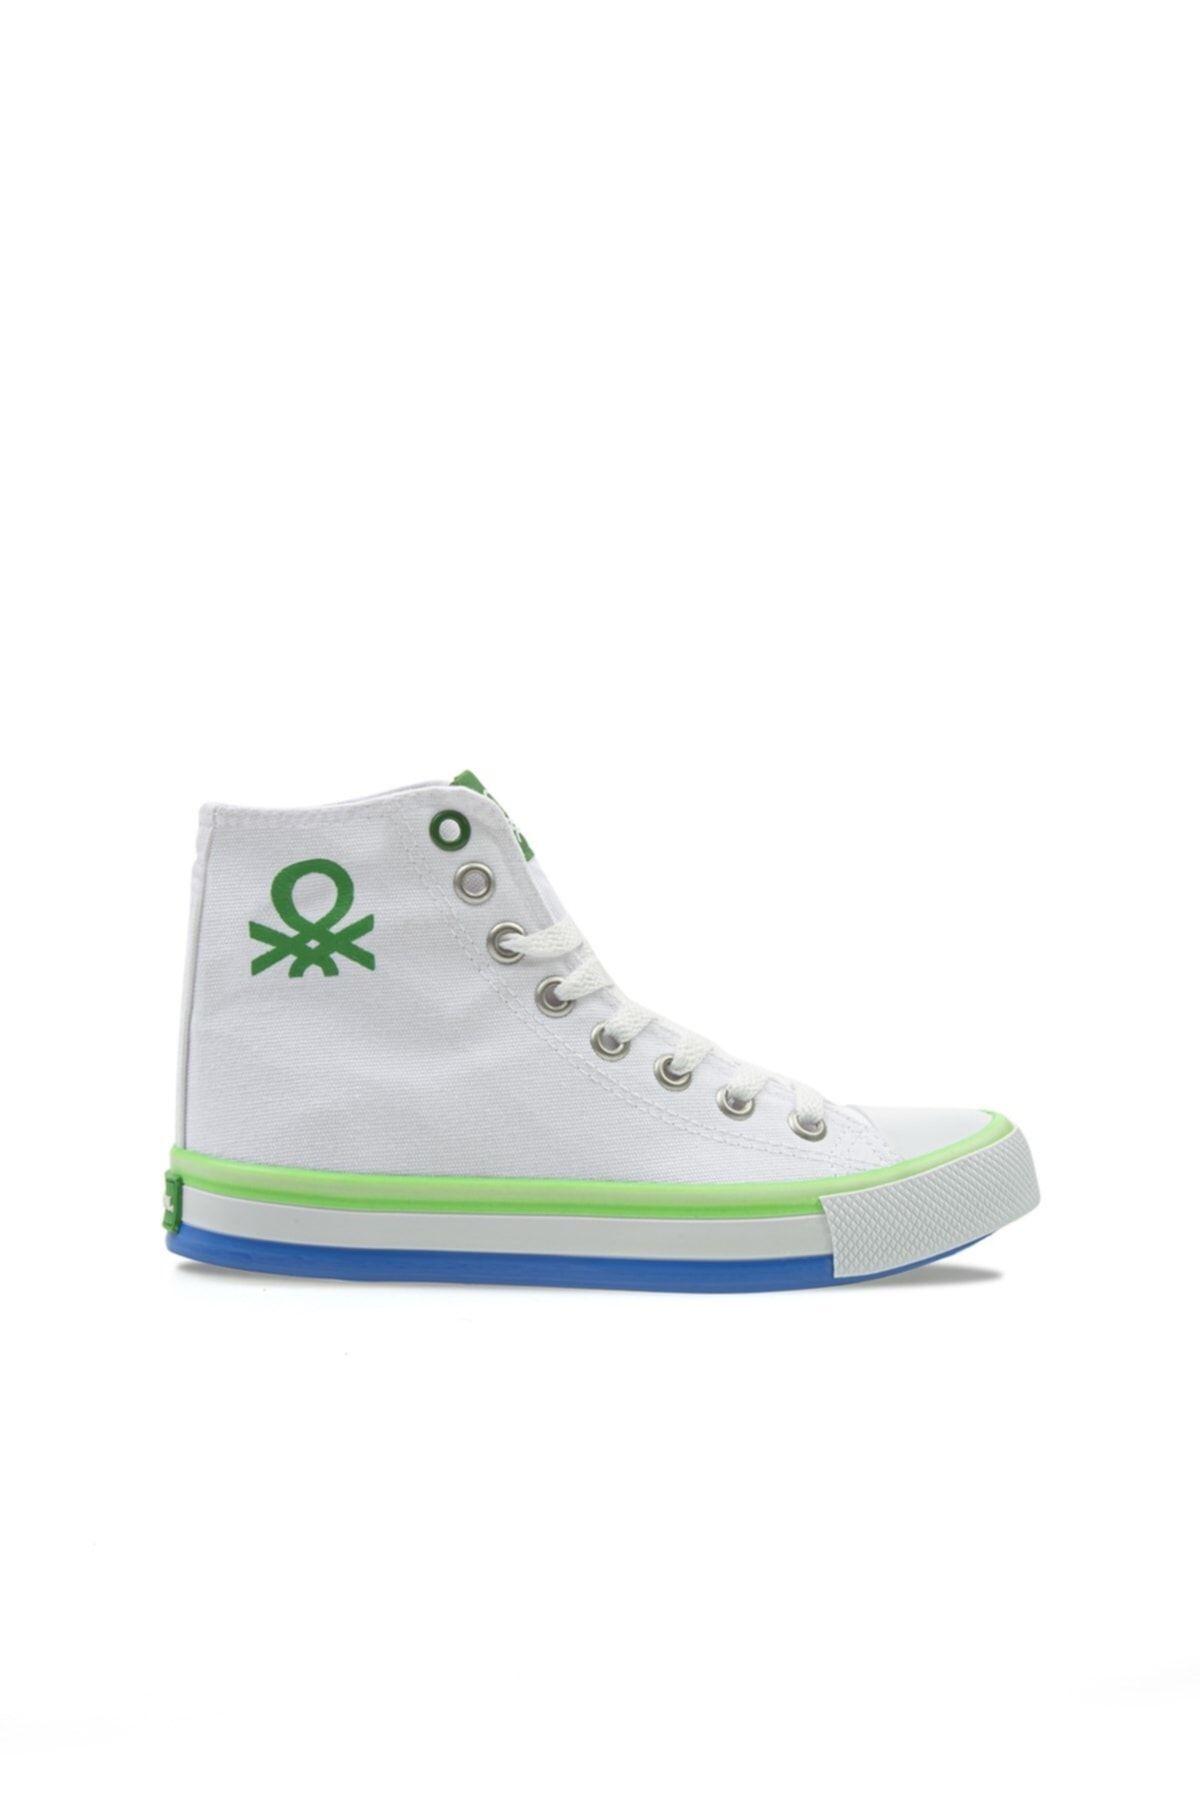 Benetton Kadın  Beyaz-yeşil Spor Ayakkabı 30189